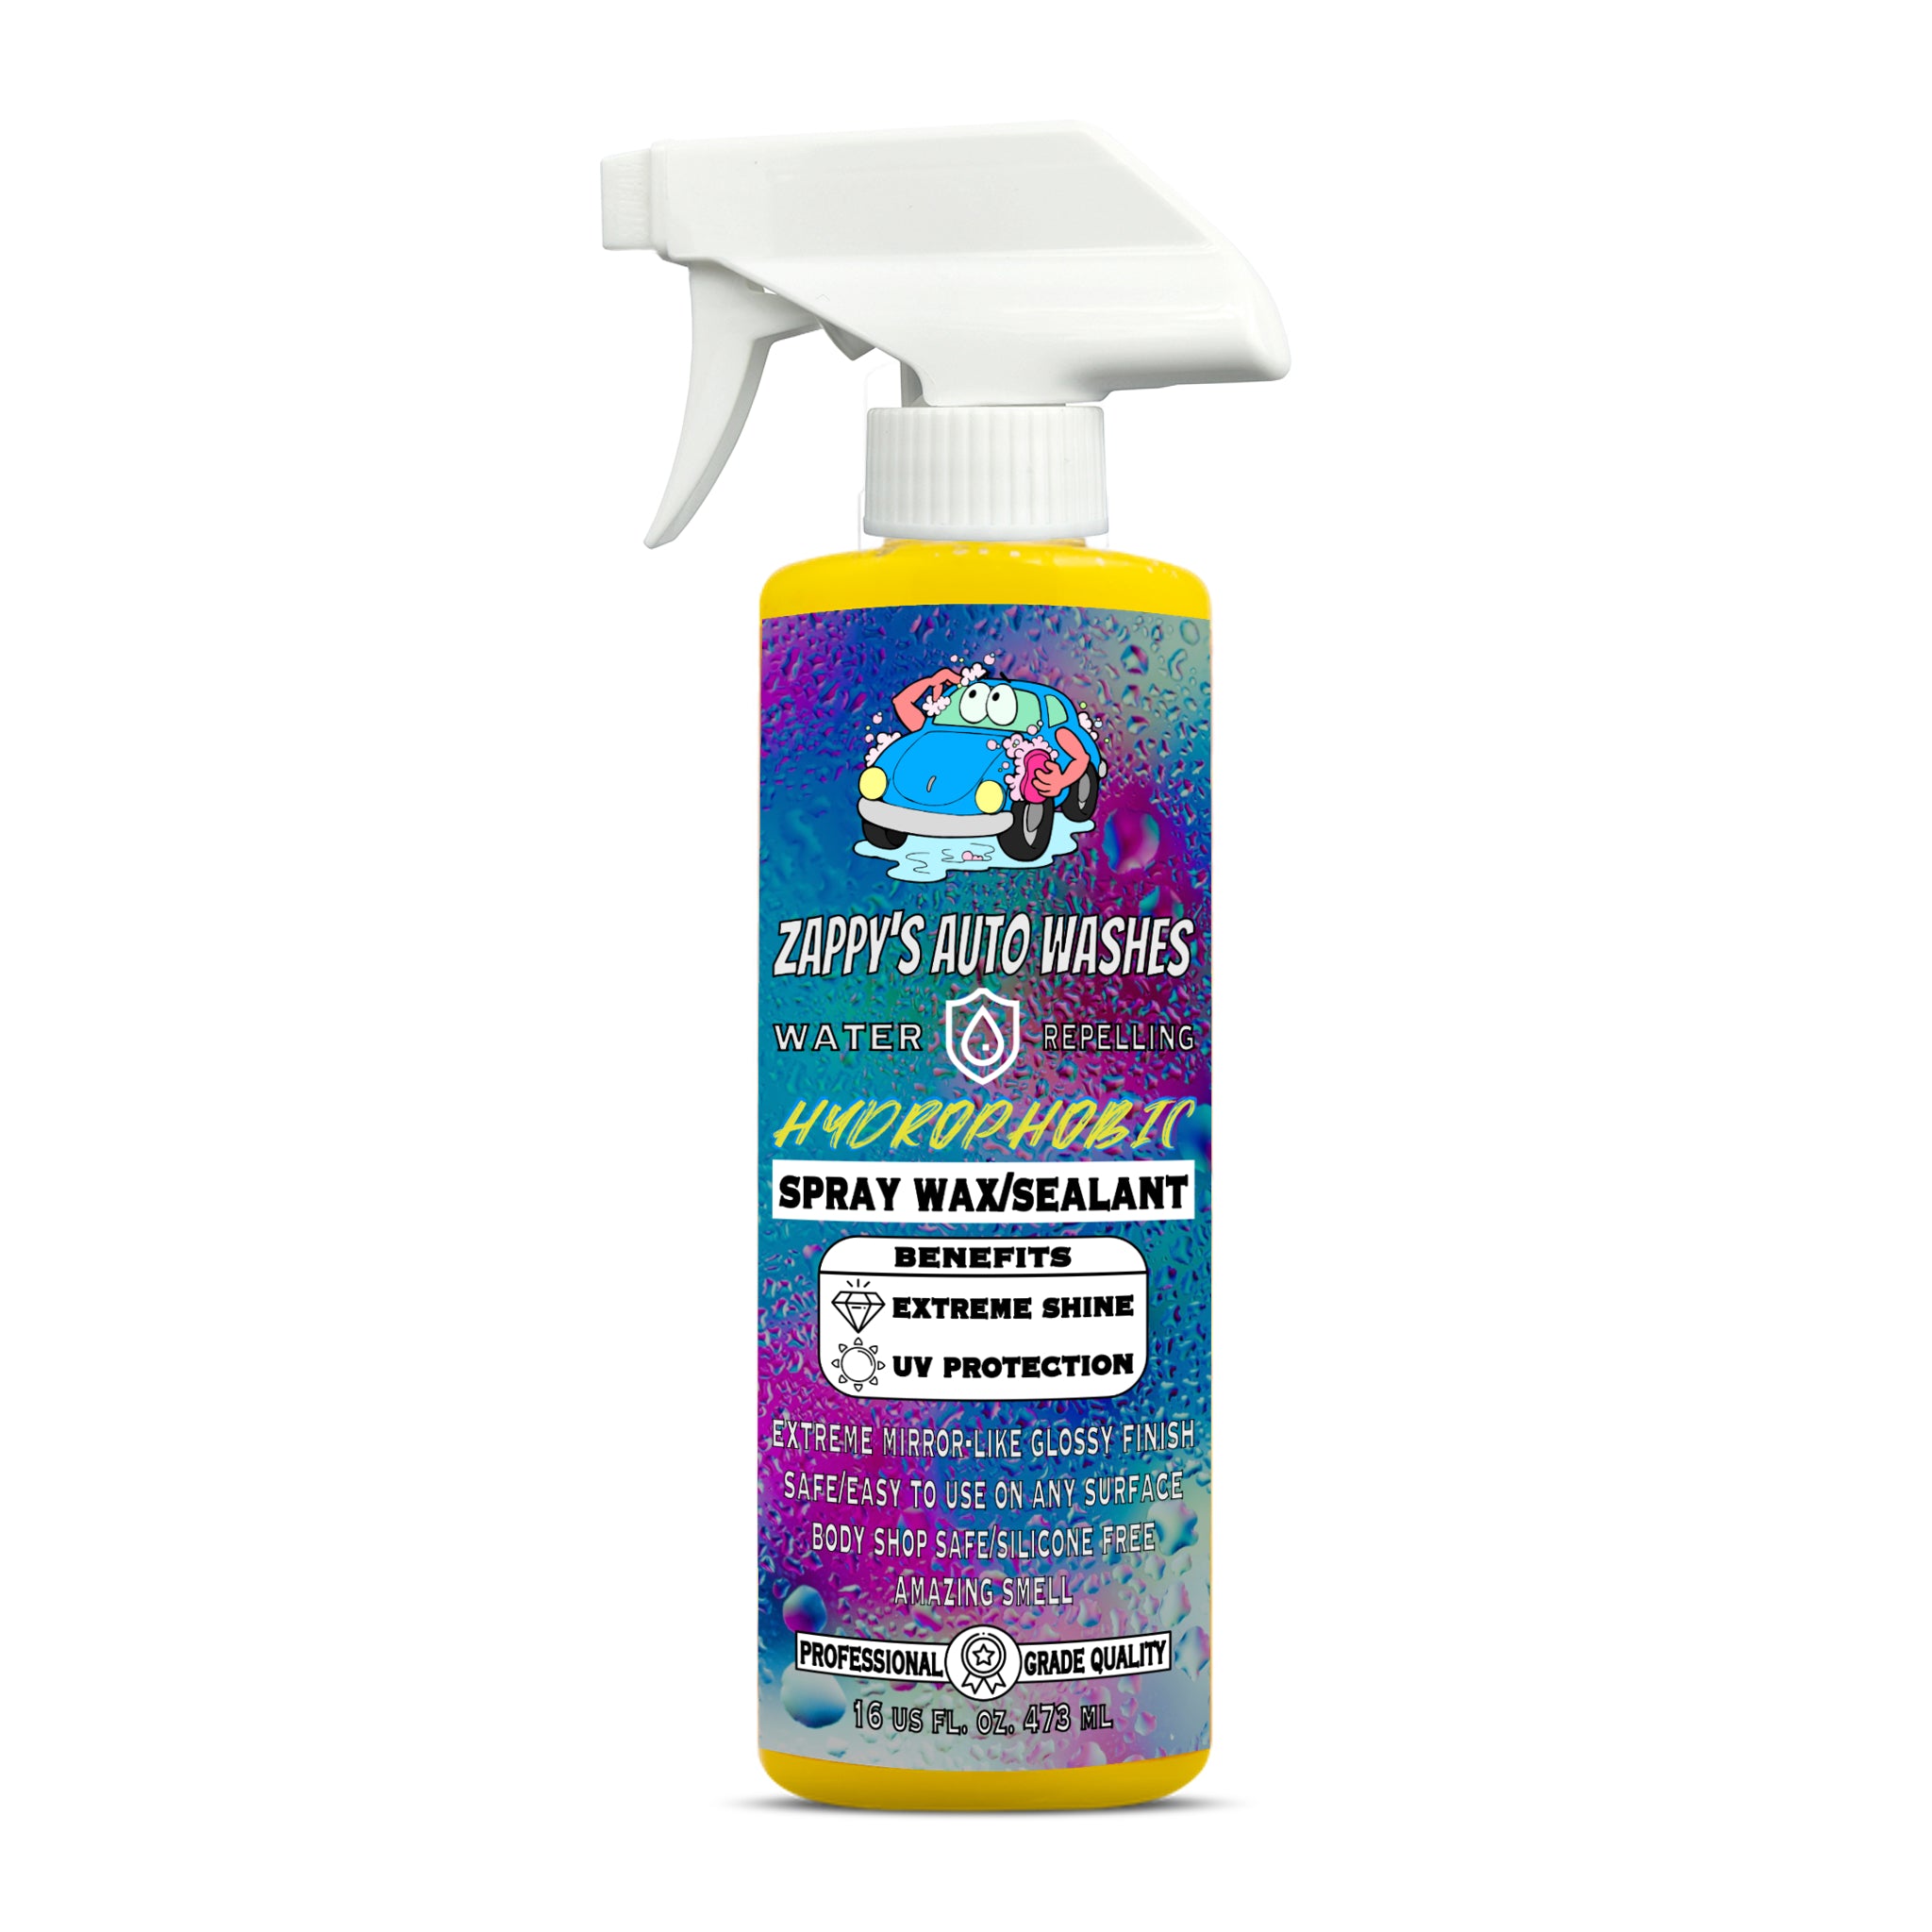 JDM Squash Scent Air Freshener – Zappy's Auto Washes